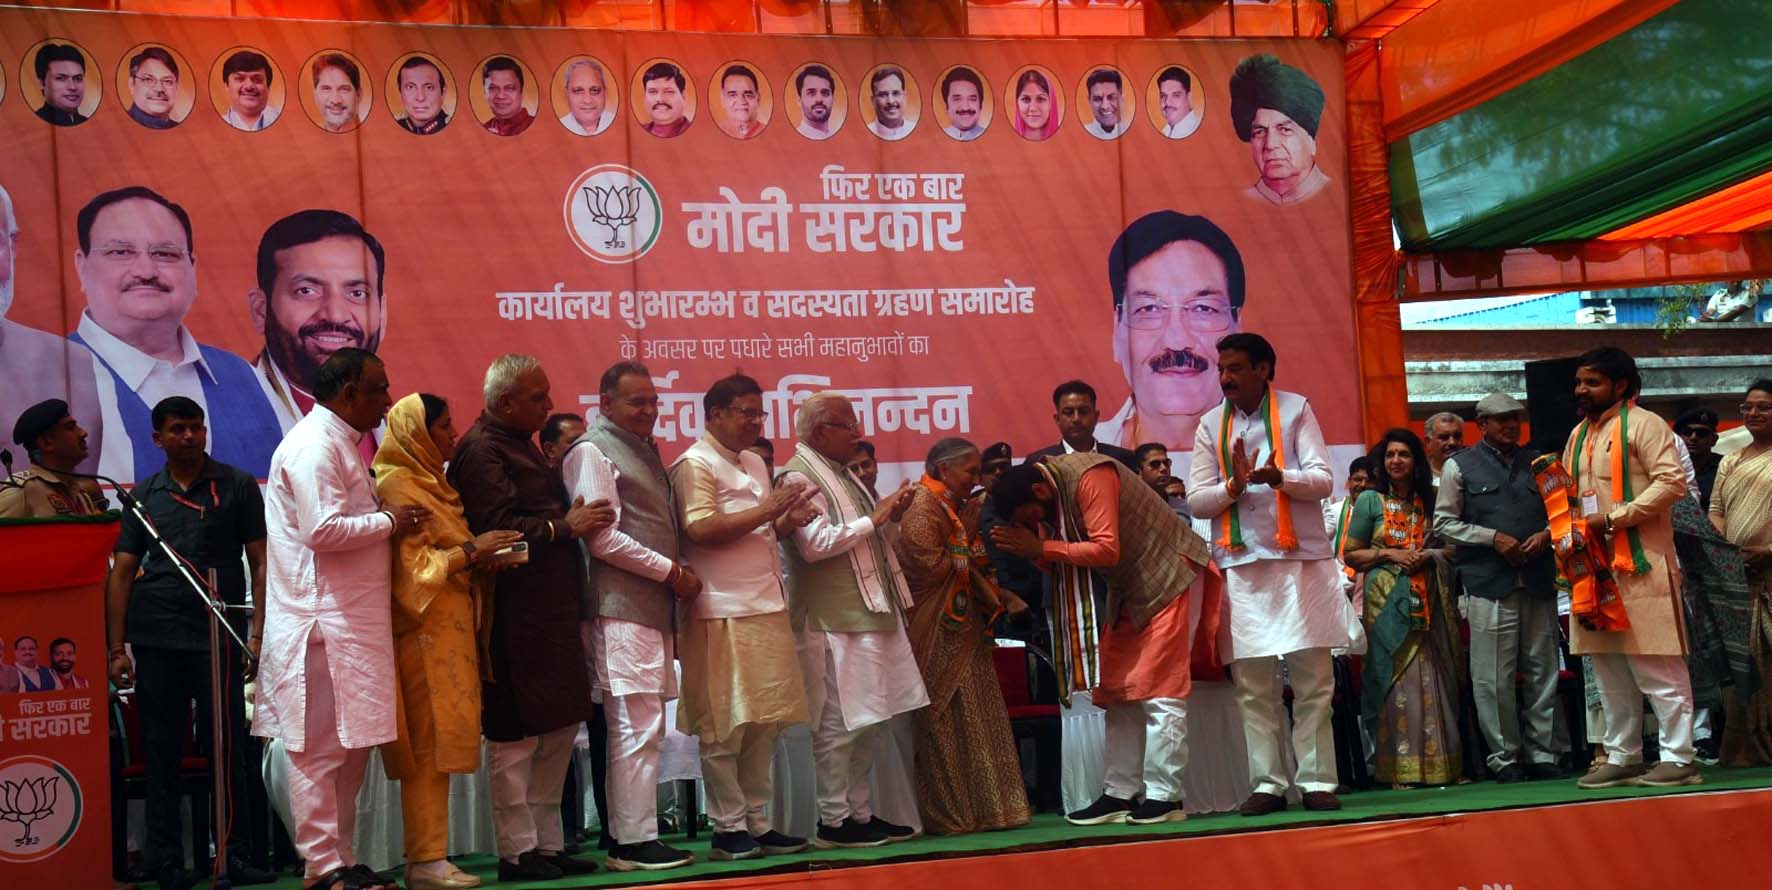 पार्टी में शामिल होने के बाद सावित्री जिंदल का अभिवादन करते मुख्यमंत्री नायब सिंह सैनी।